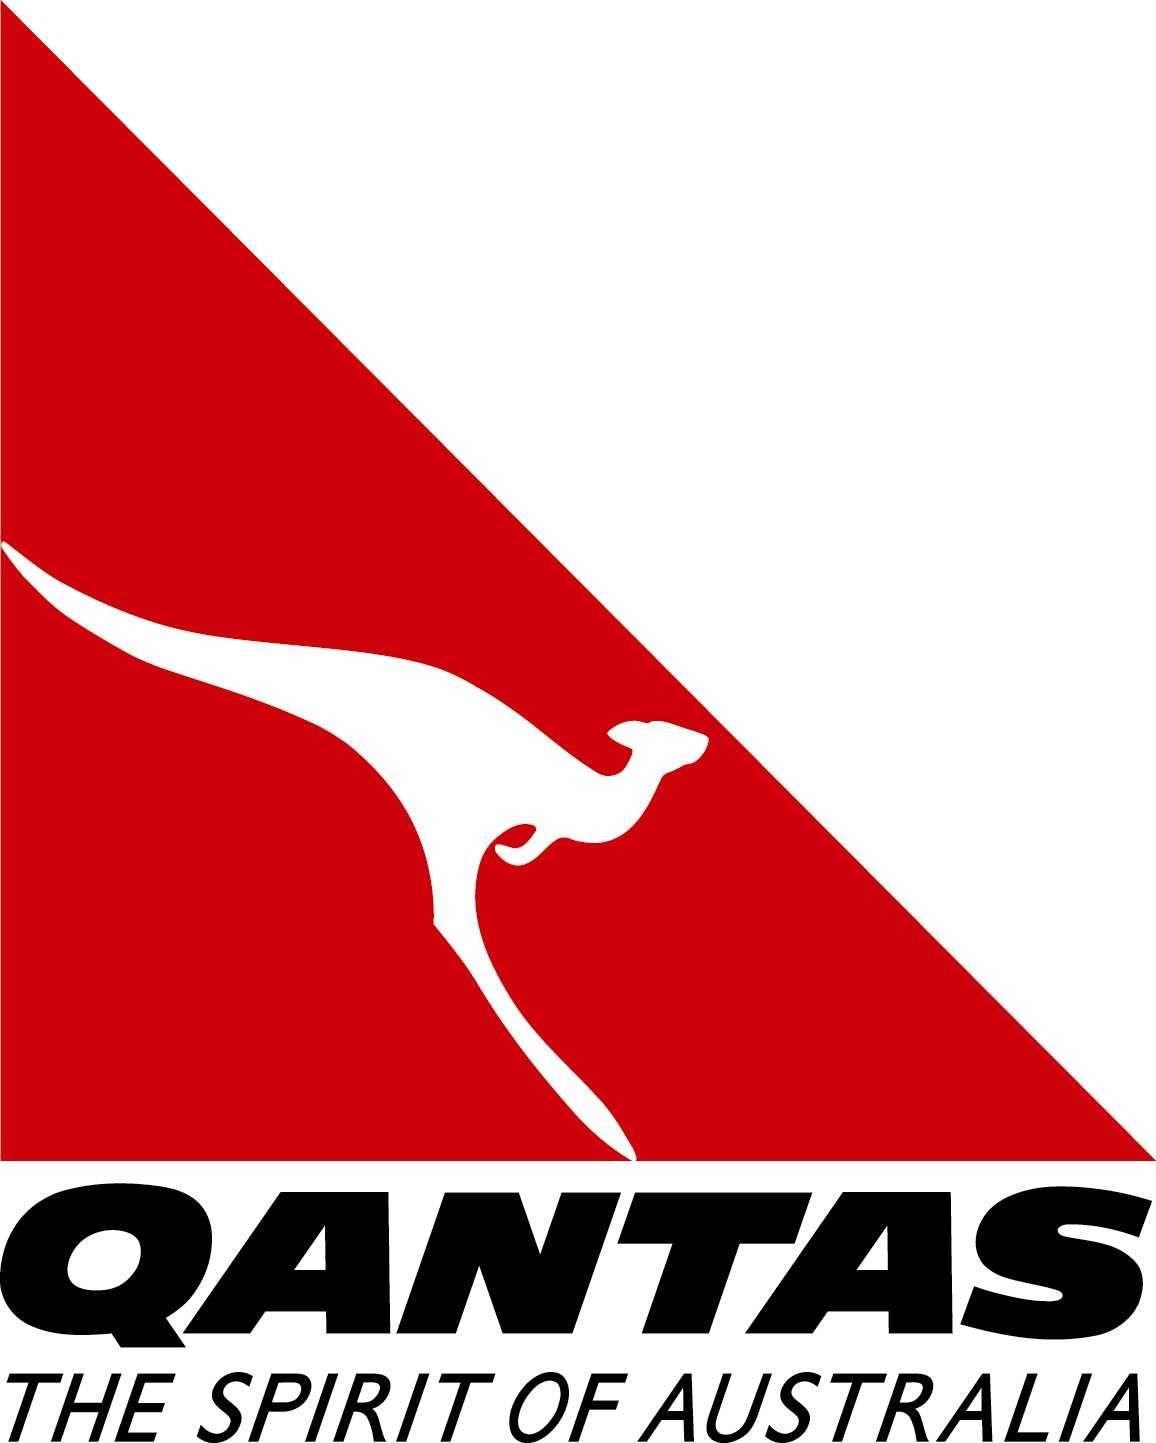 Airline with Kangaroo Logo - Qantas Logos